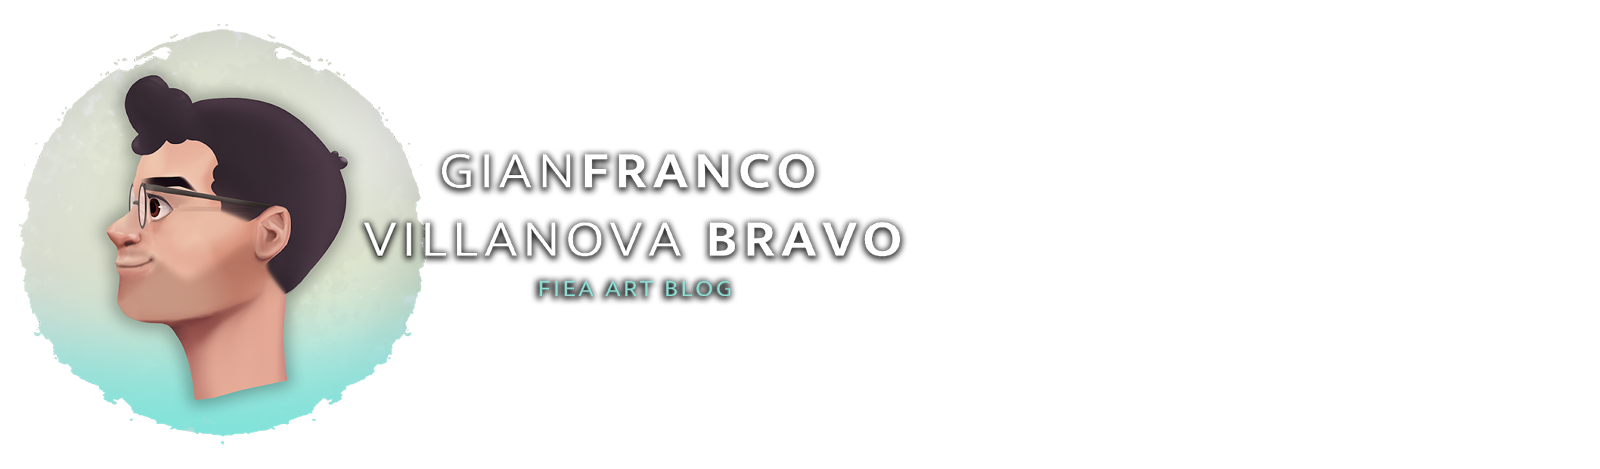 FRANCO VILLANOVA BRAVO FIEA  ART BLOG